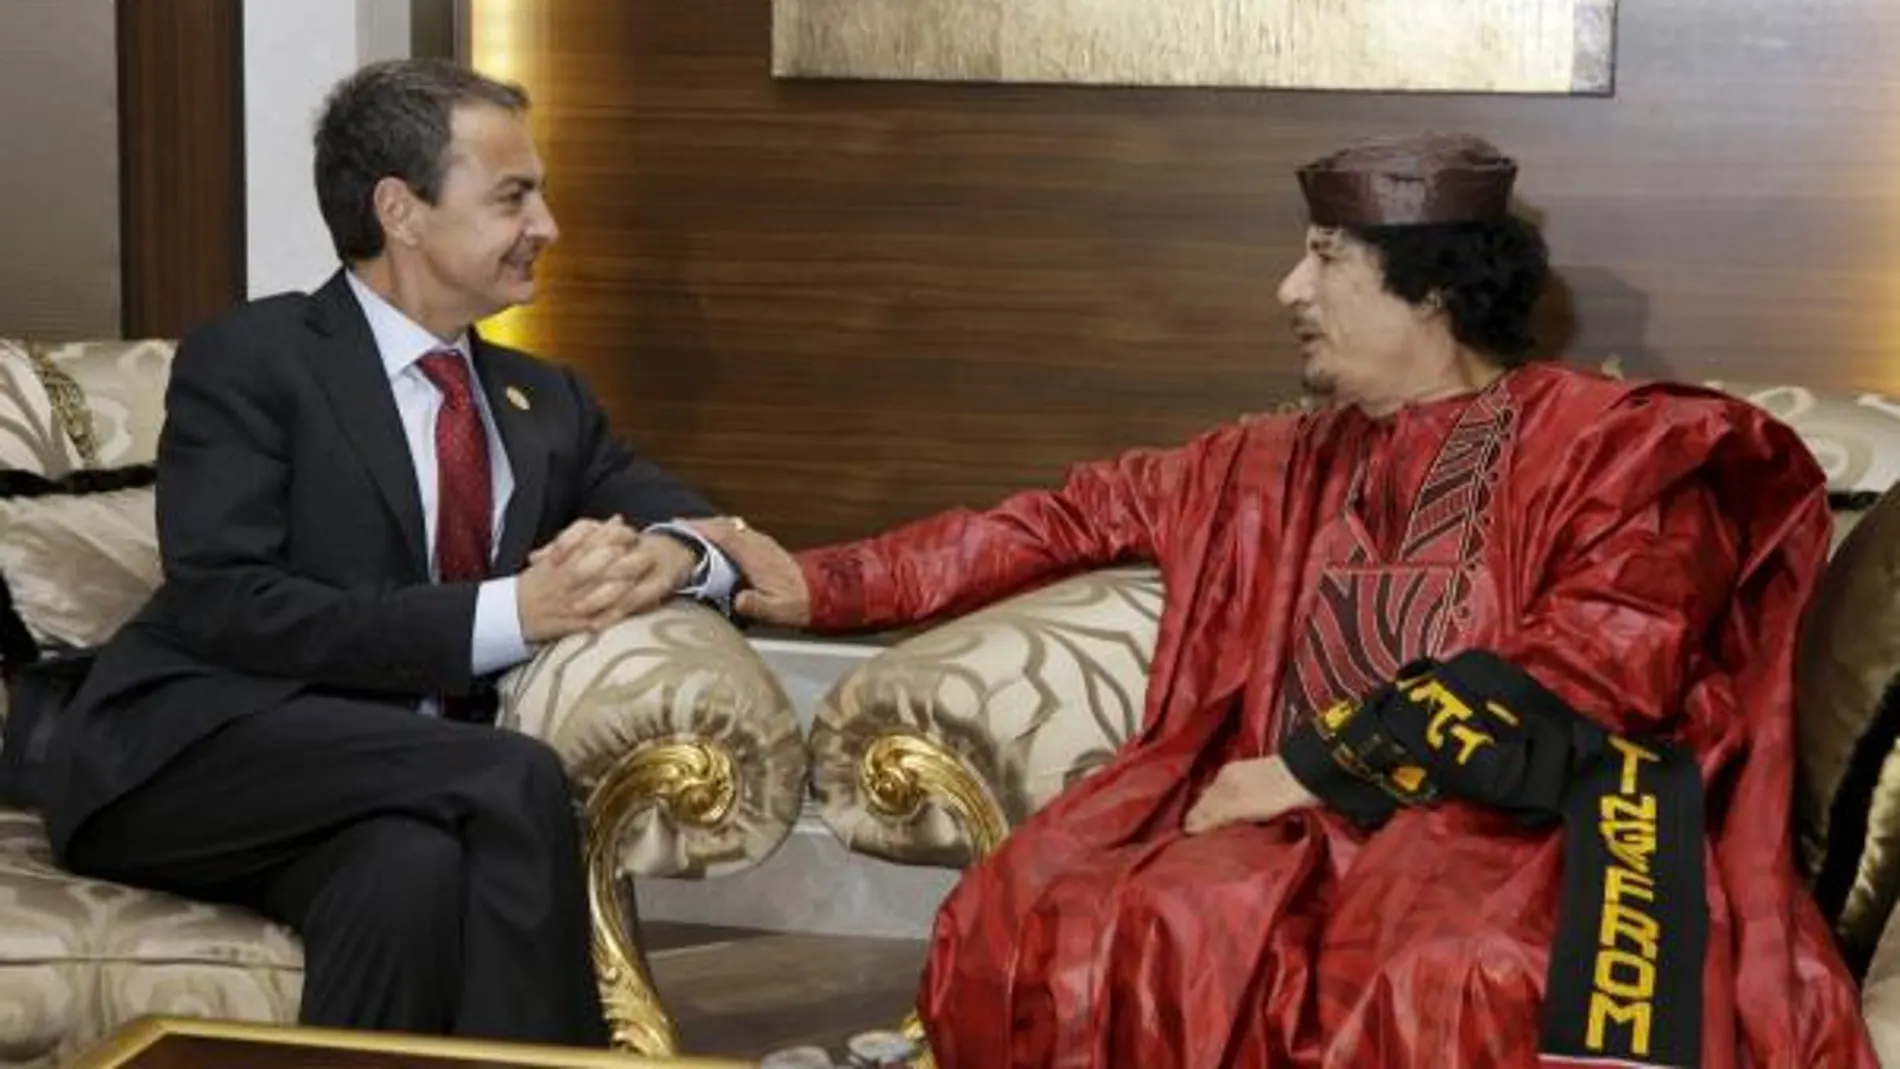 Imagen facilitada por Presidencia del Gobierno, de la reunión bilateral entre el Presidente del Gobierno, José Luis Rodriguez Zapatero (i) y el lider libio, Muammar Gadafia, durante la tercera cumbre que celebran la Unión Africana y la Unión Europea, en l